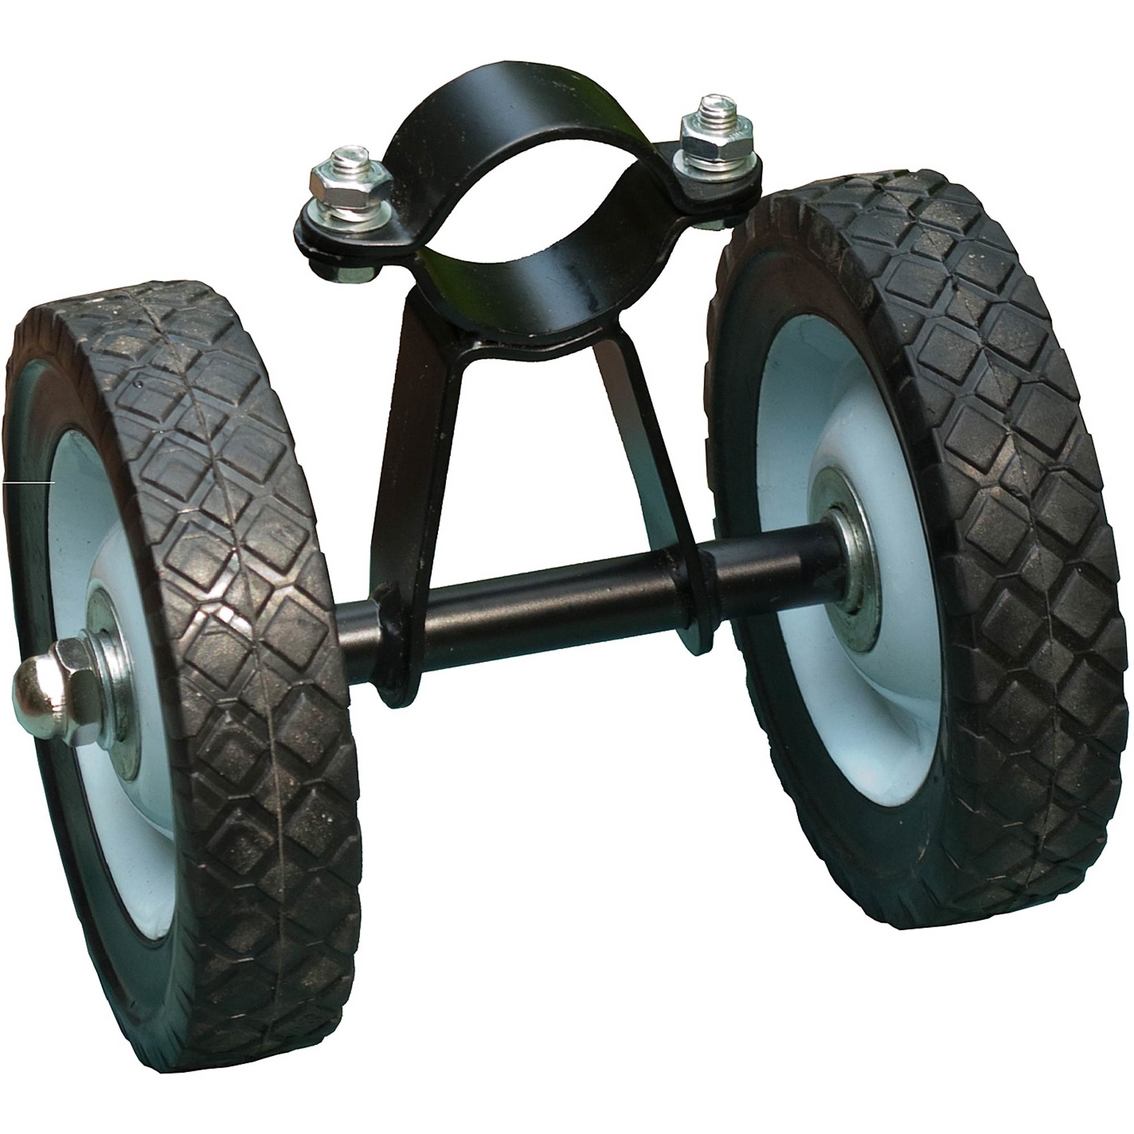 Algoma Wheel Kit Assembly